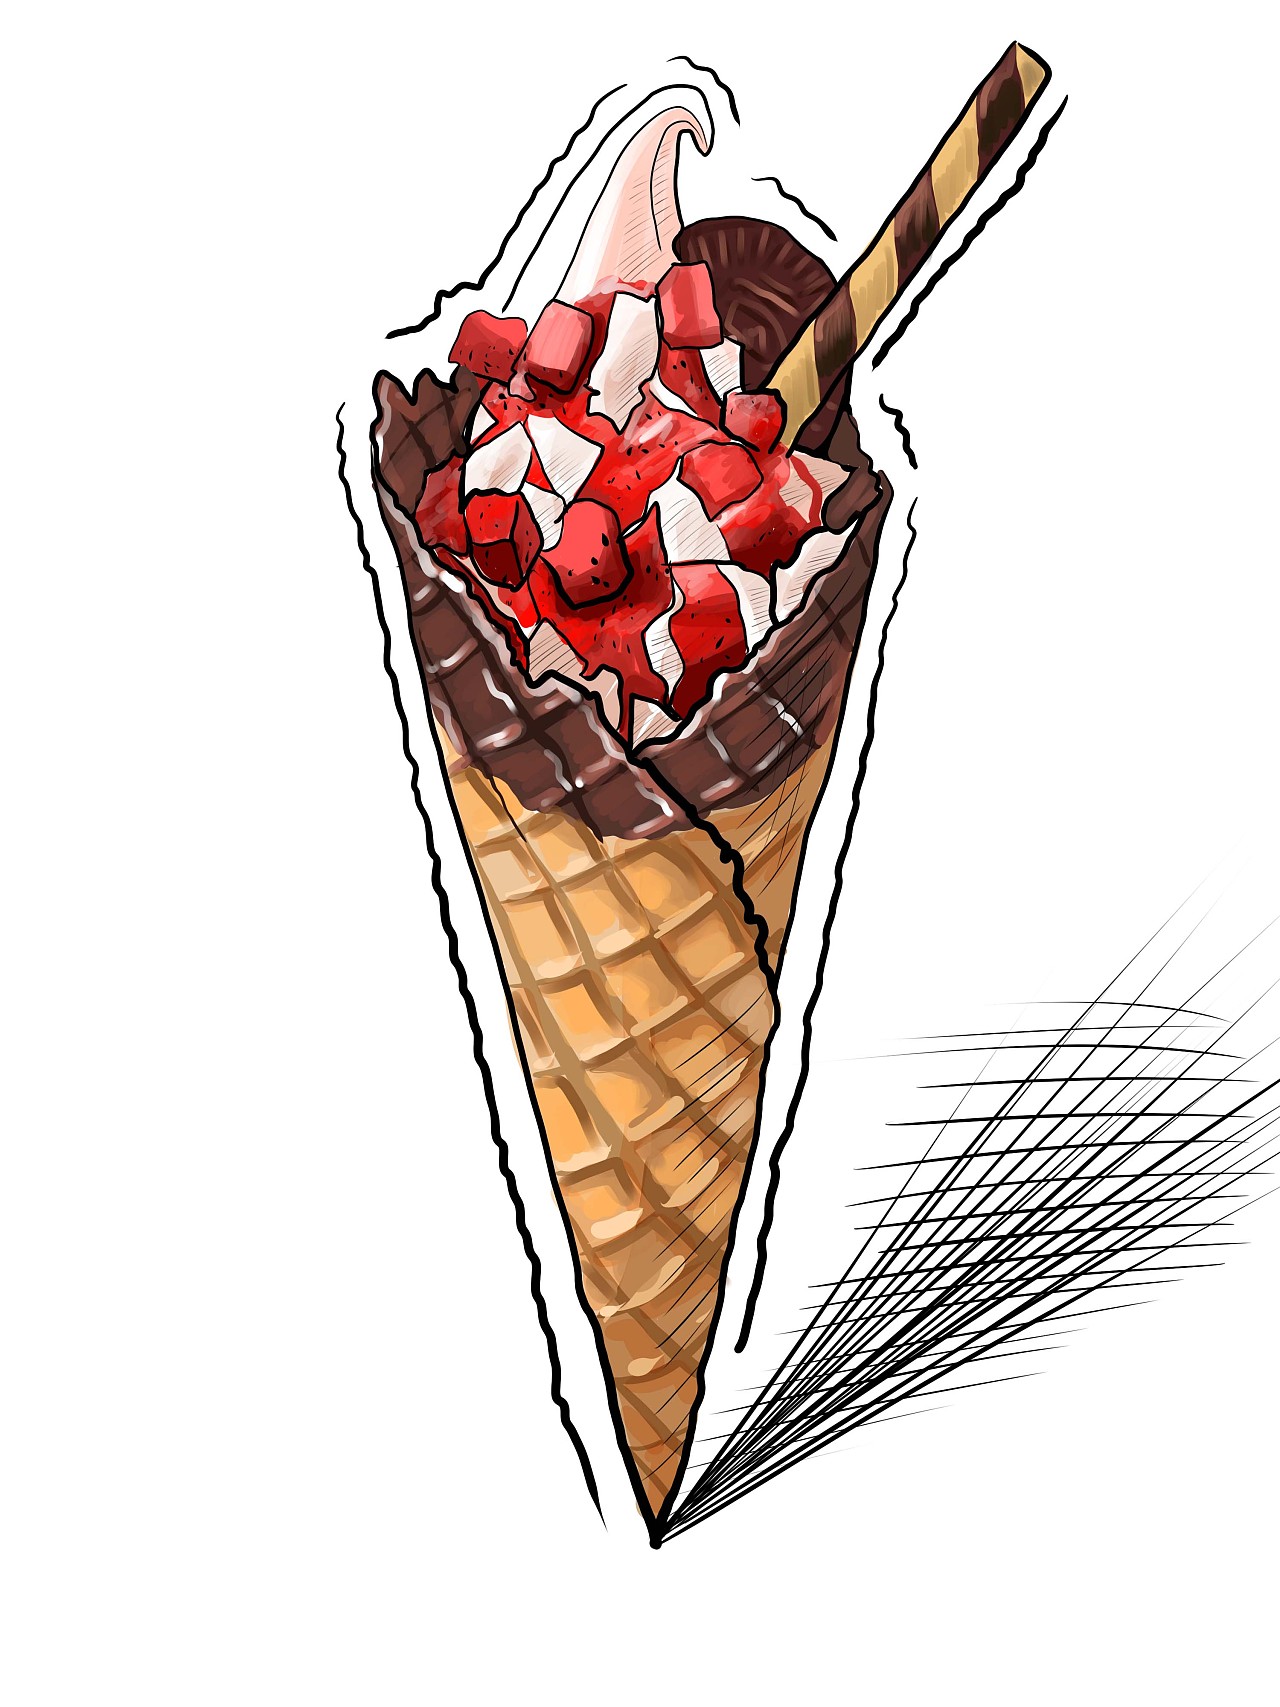 （二十六）意式手工冰淇淋（Gelato） - 知乎